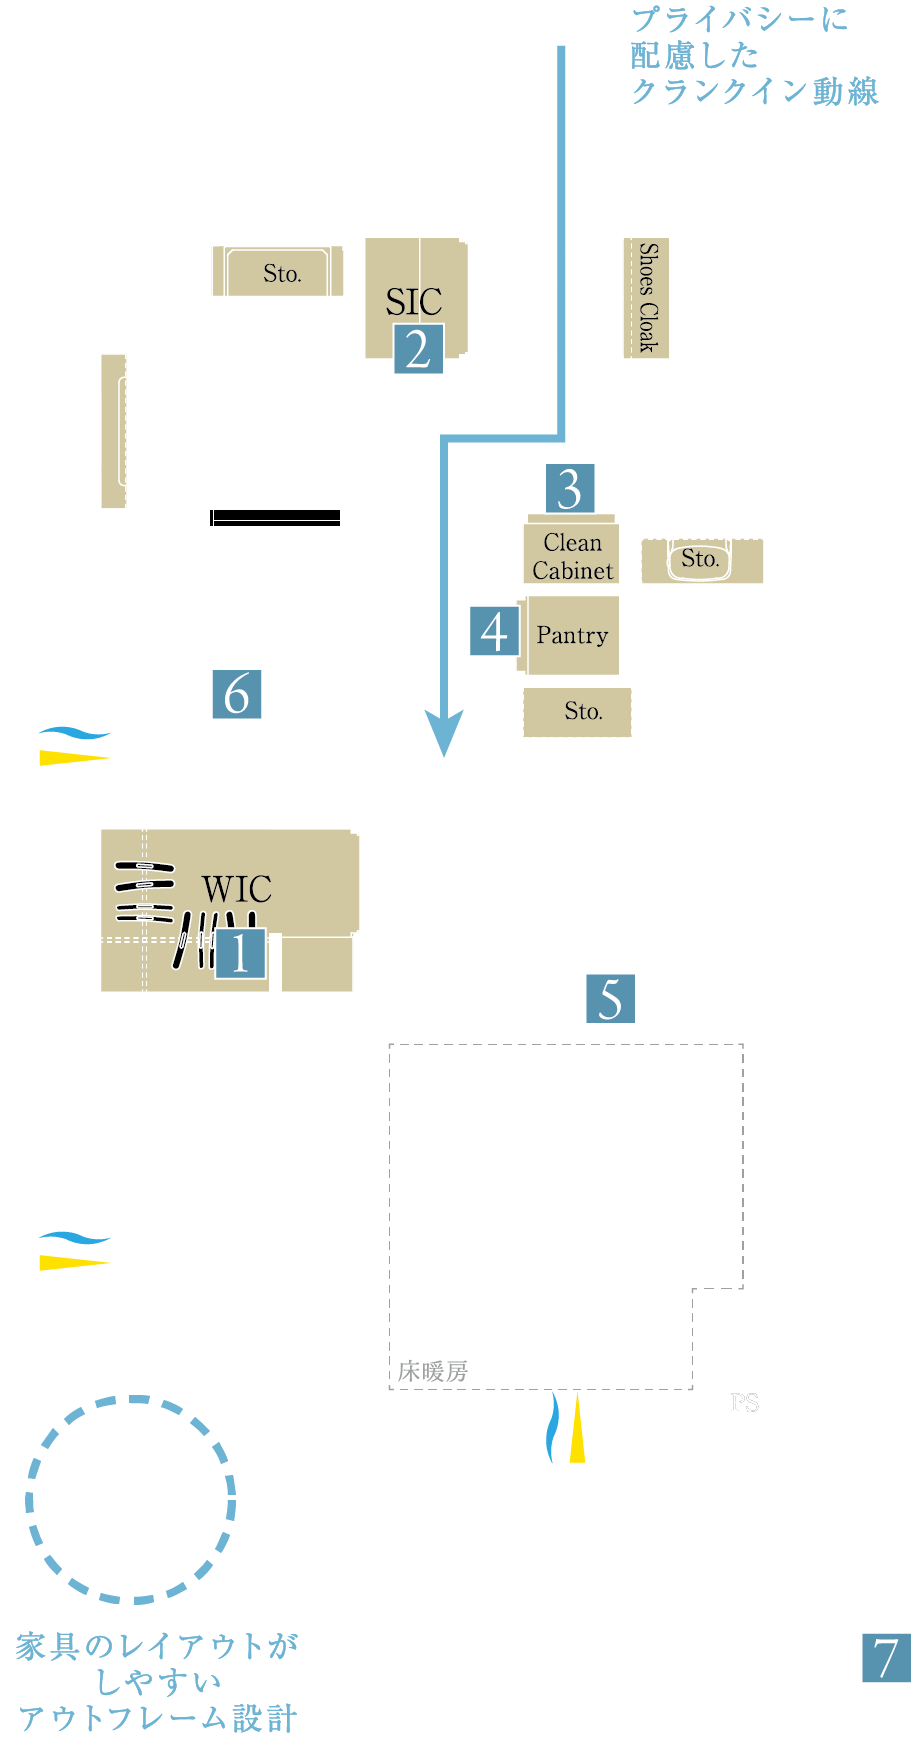 D2 type Room Plan